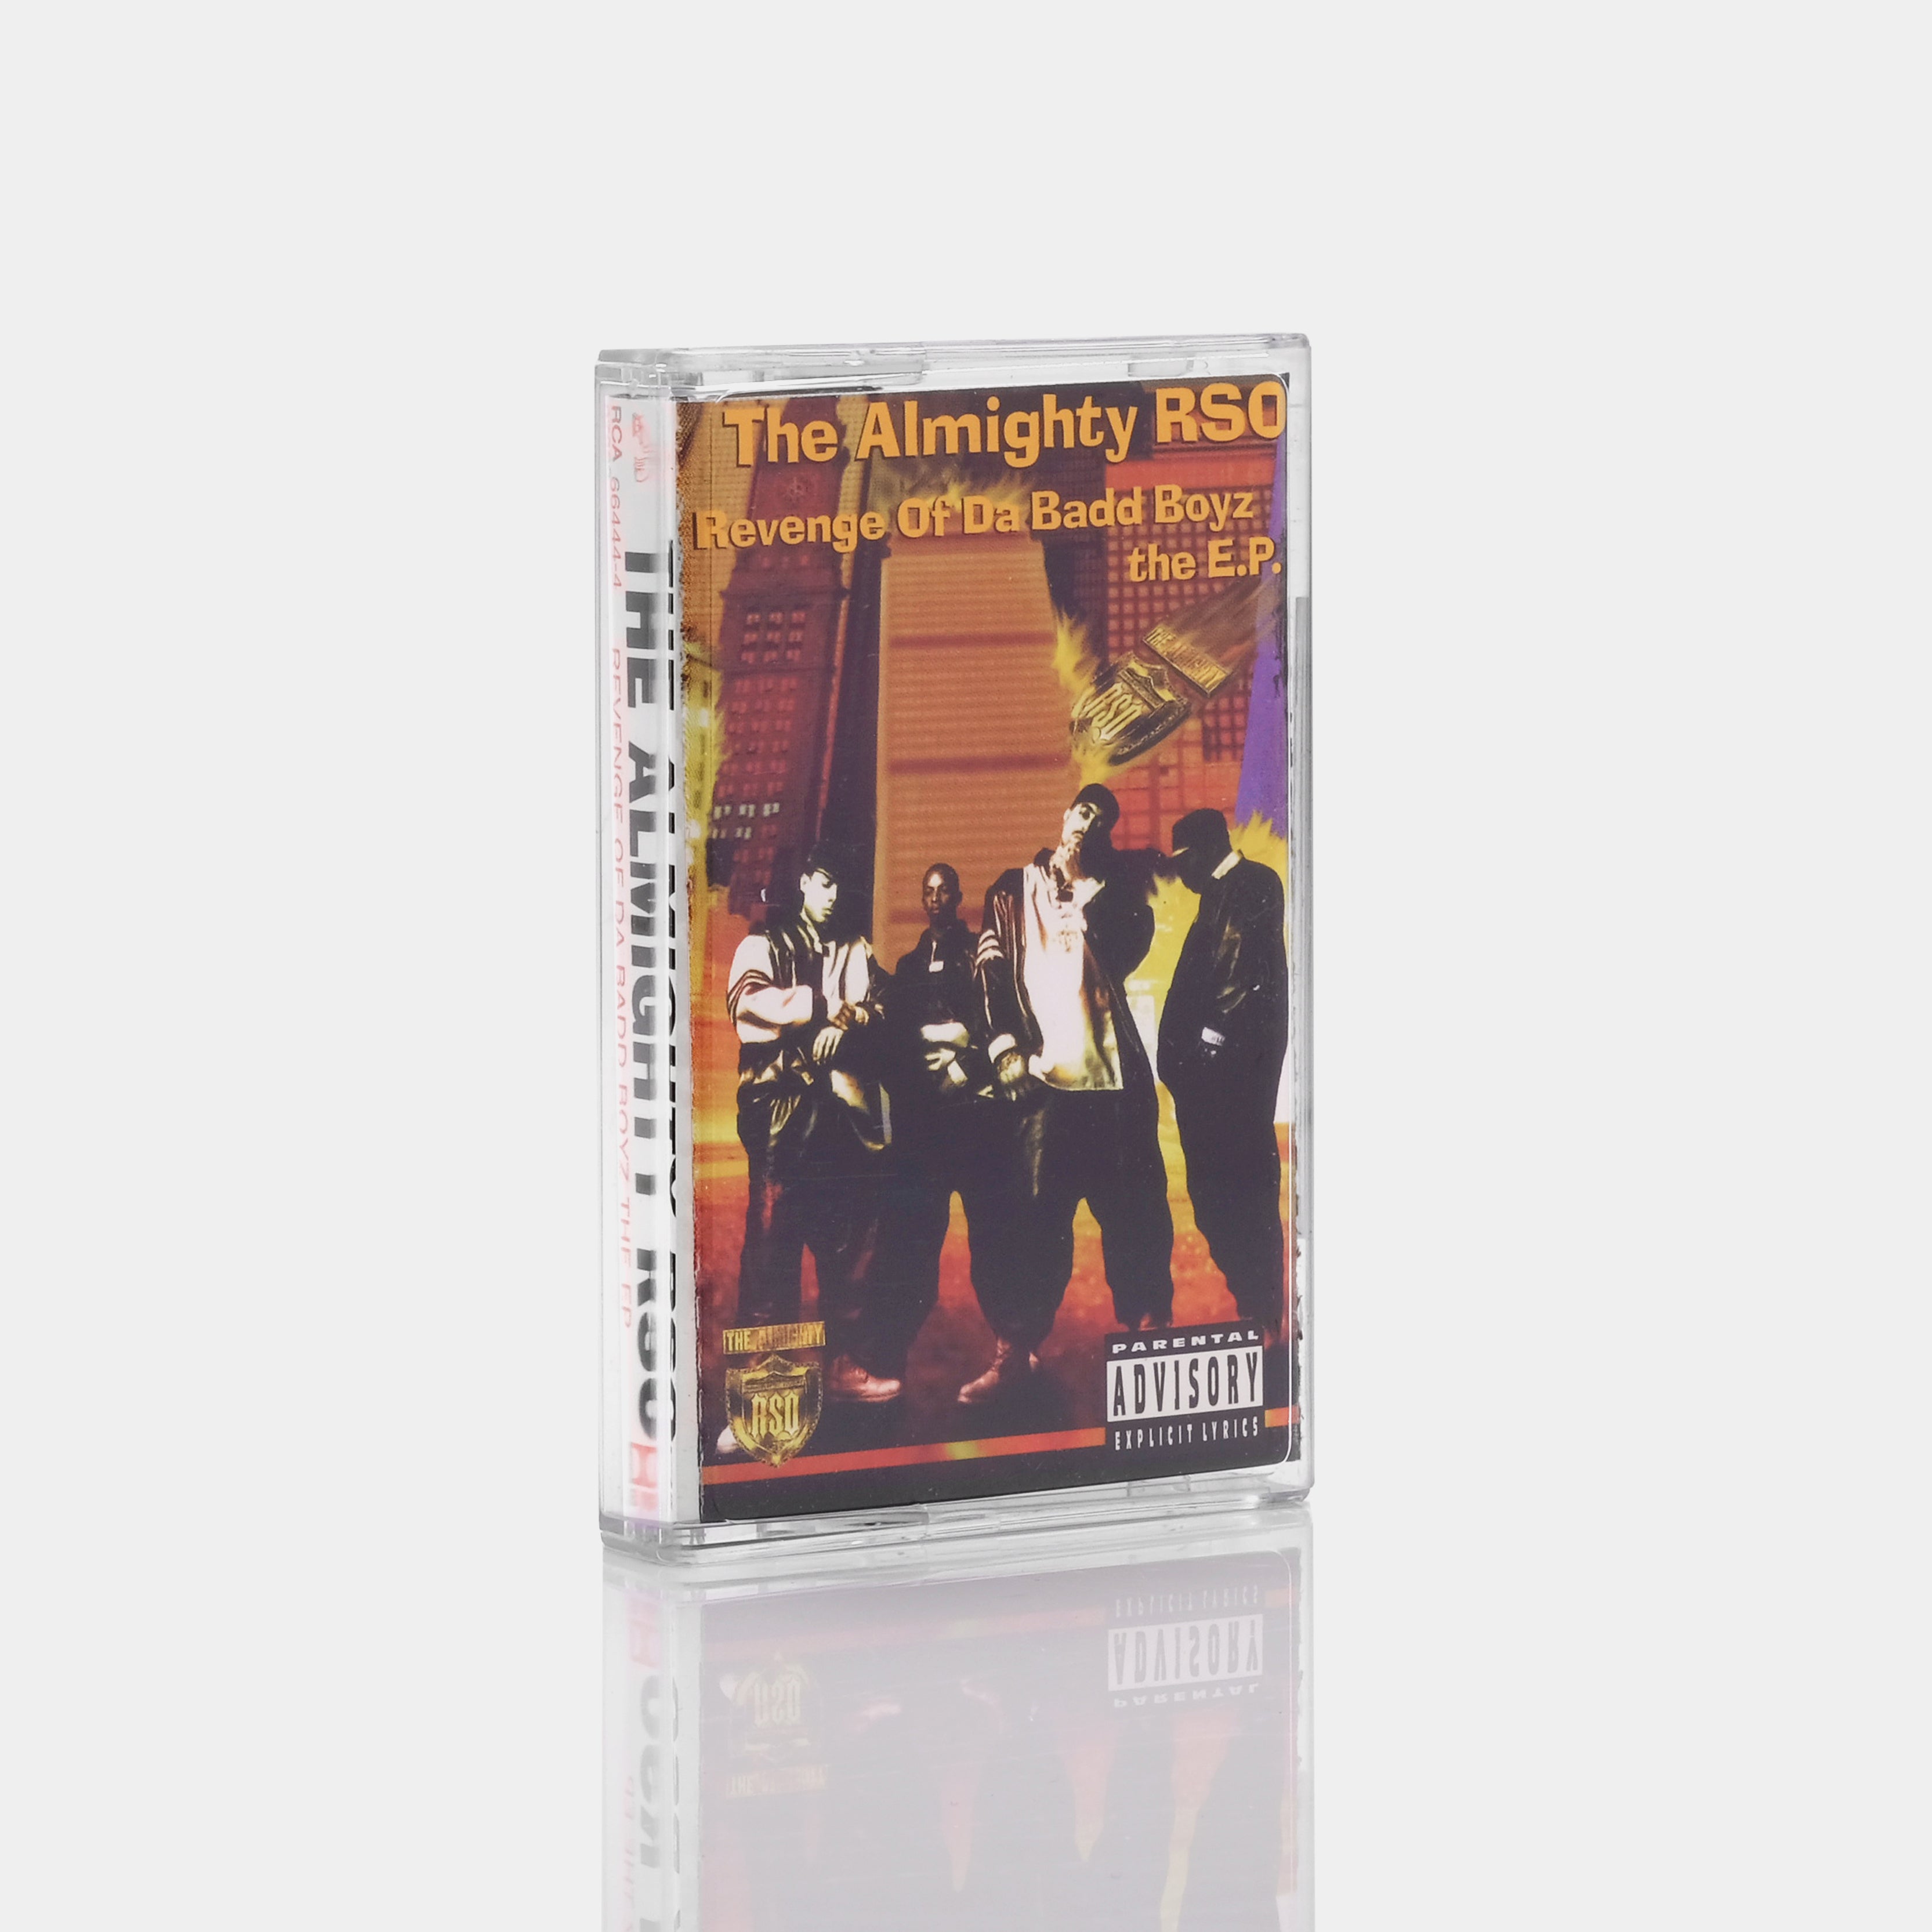 The Almighty RSO - Revenge Of Da Badd Boyz The E.P. Cassette Tape